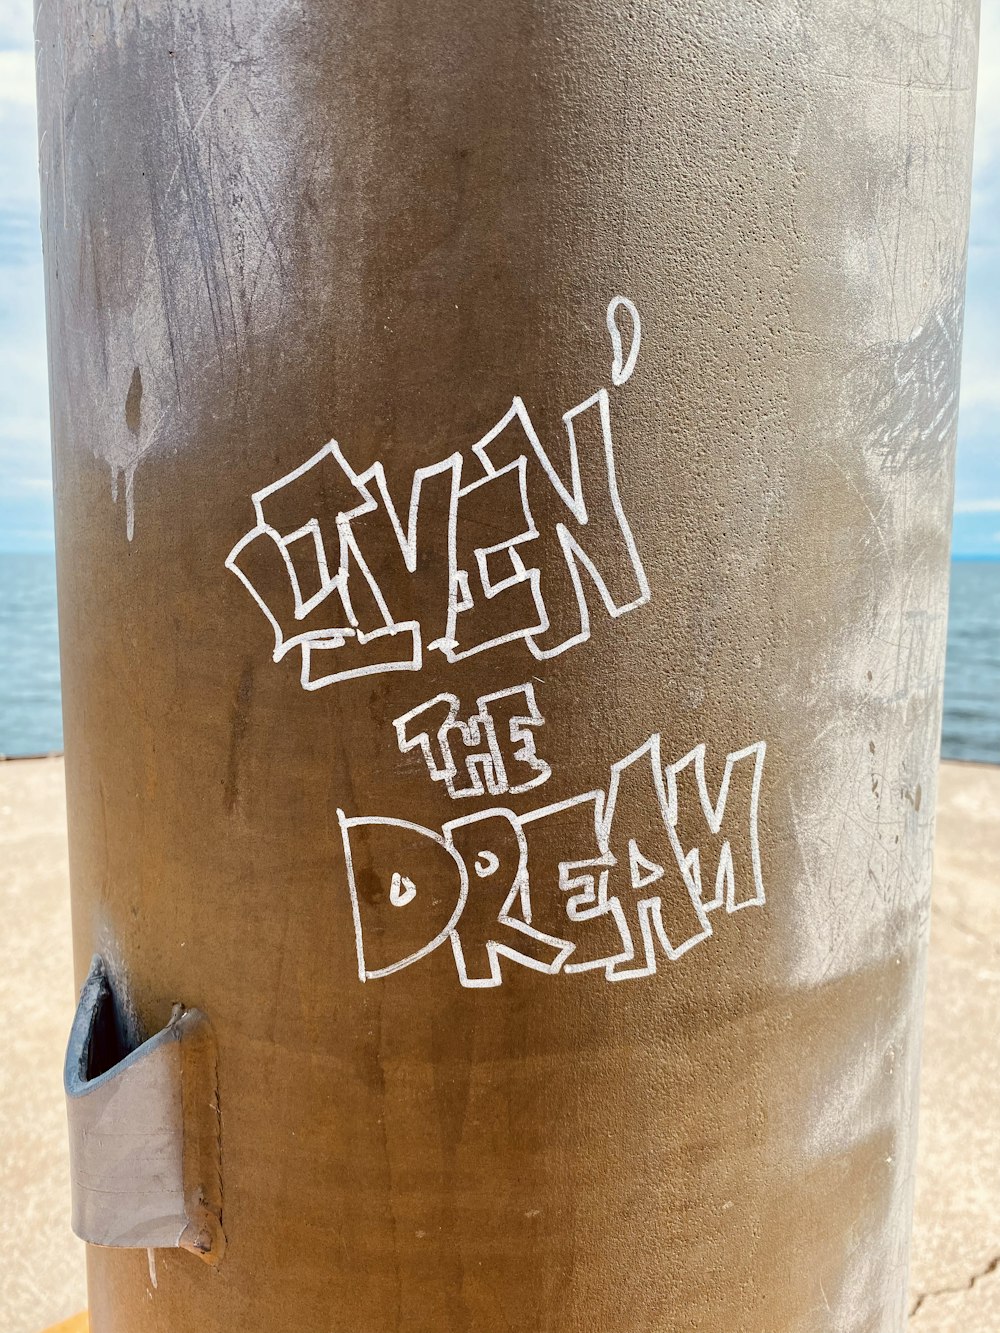 a pole with graffiti written on it near the ocean